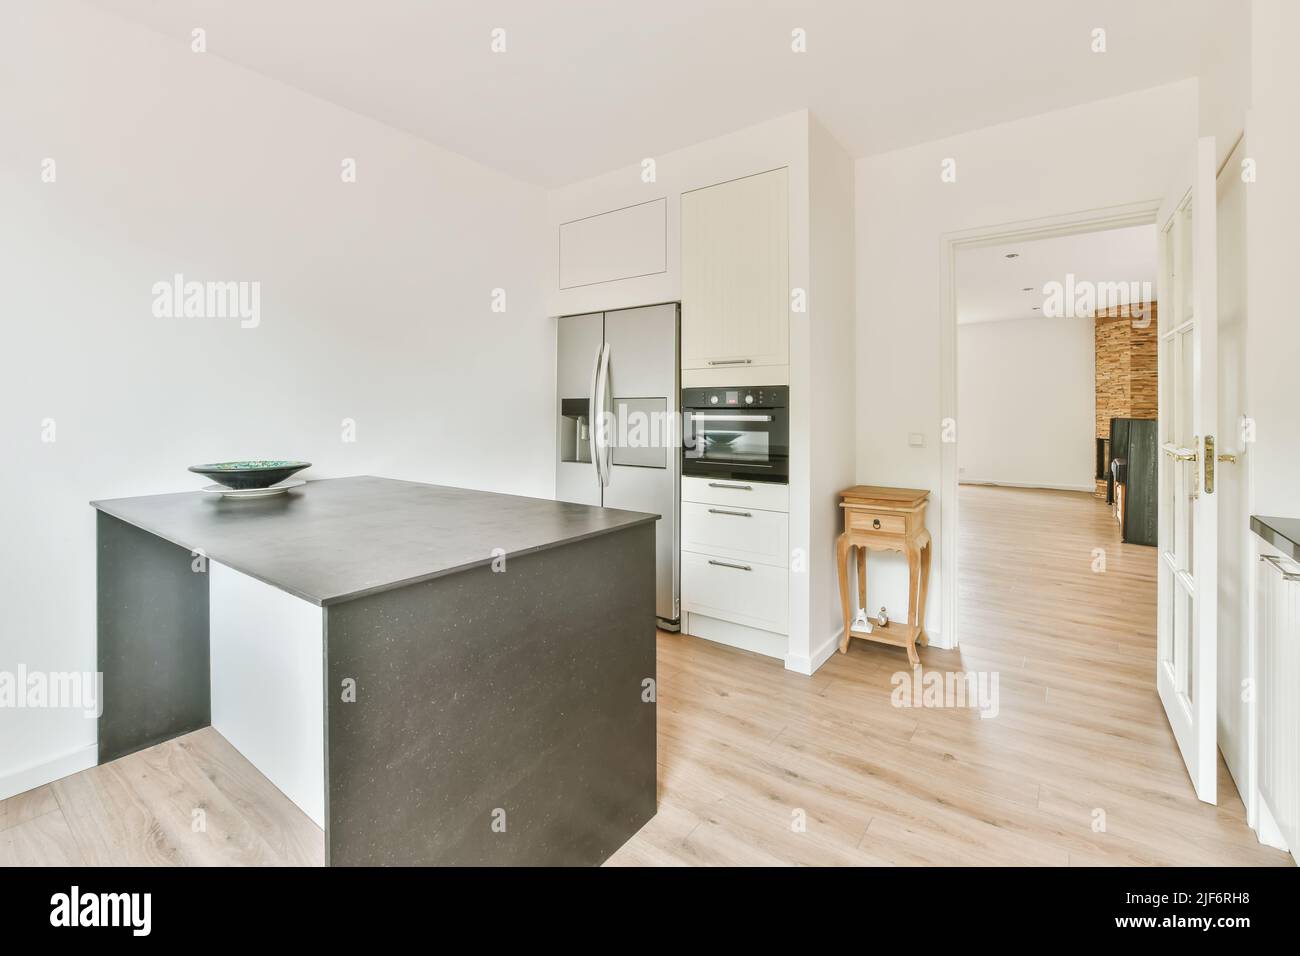 Tavolo grigio con ciotola posta in cucina chiara con armadi bianchi e moderni elettrodomestici neap aperto porta in spazioso appartamento Foto Stock